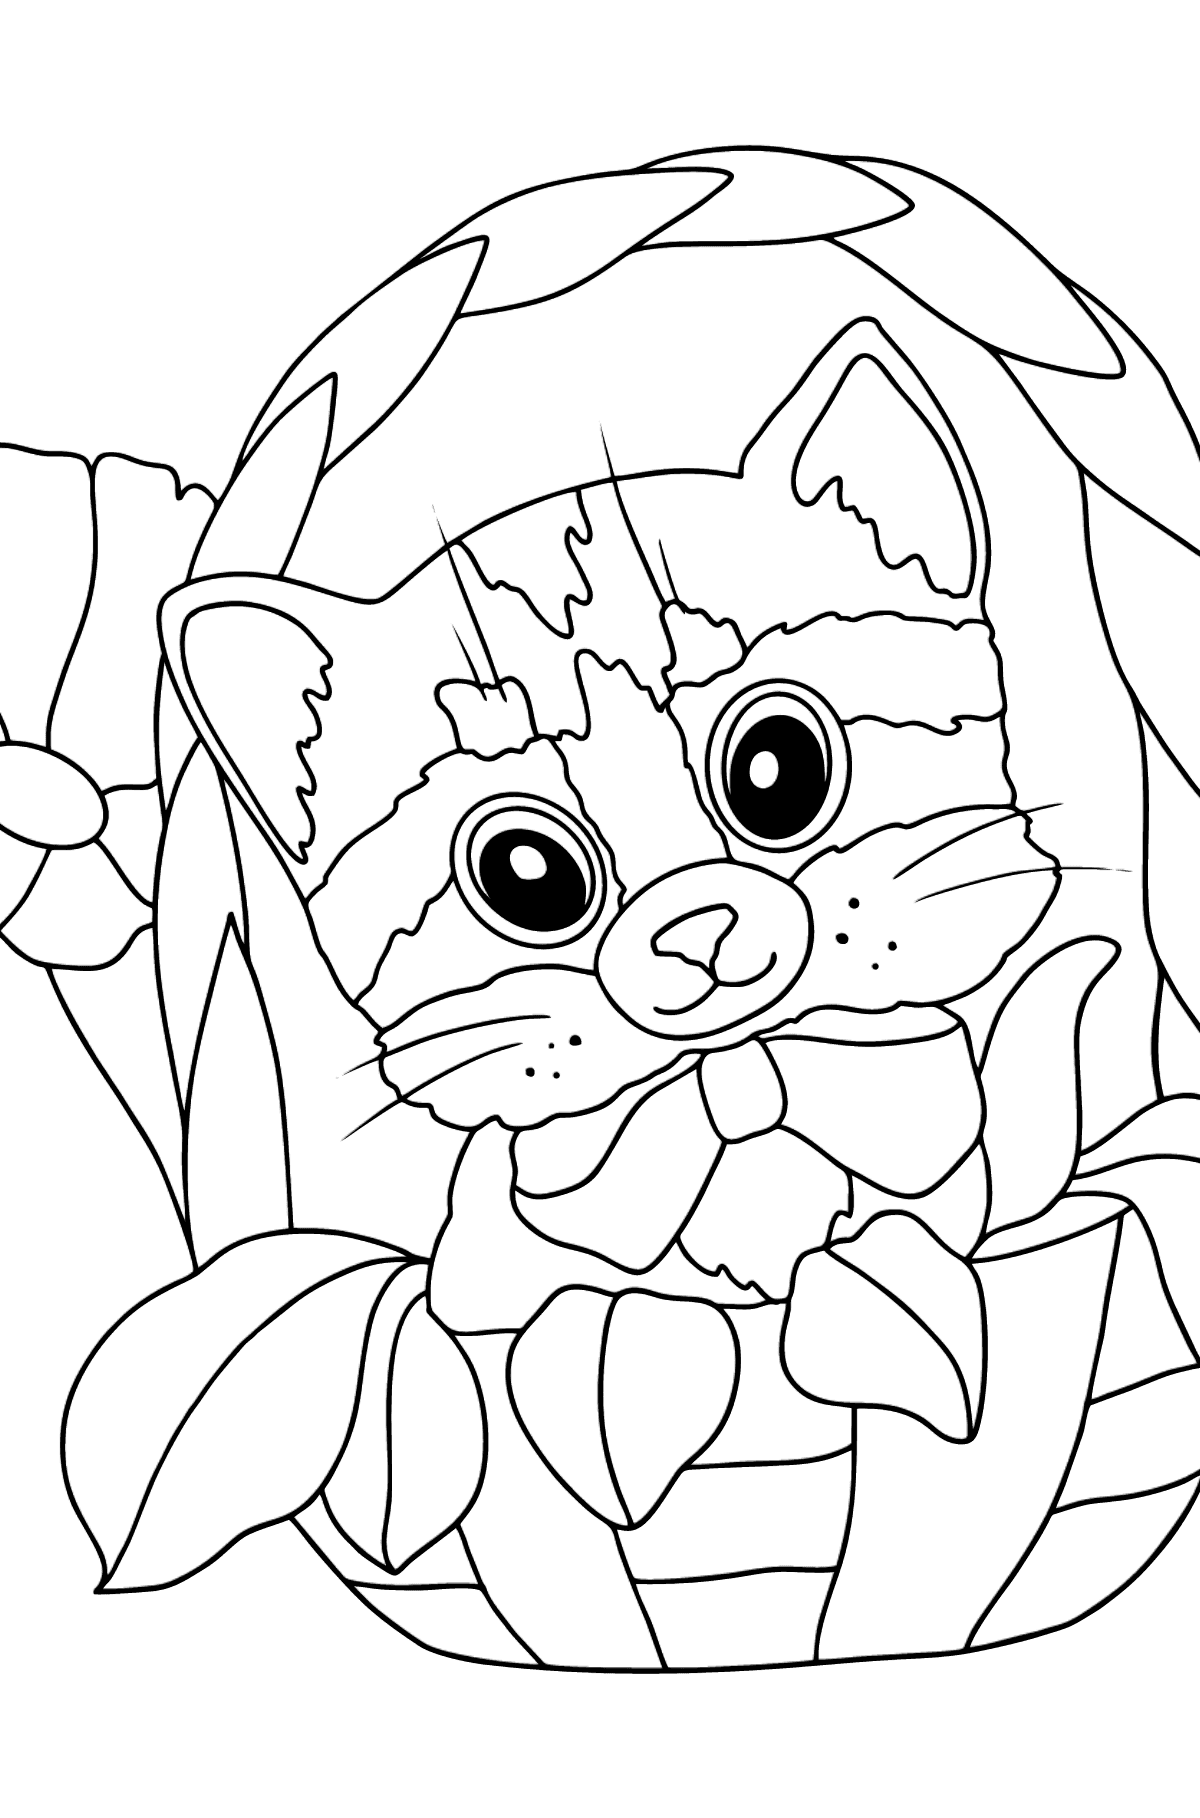 Tegning til fargelegging liten kattunge - Tegninger til fargelegging for barn